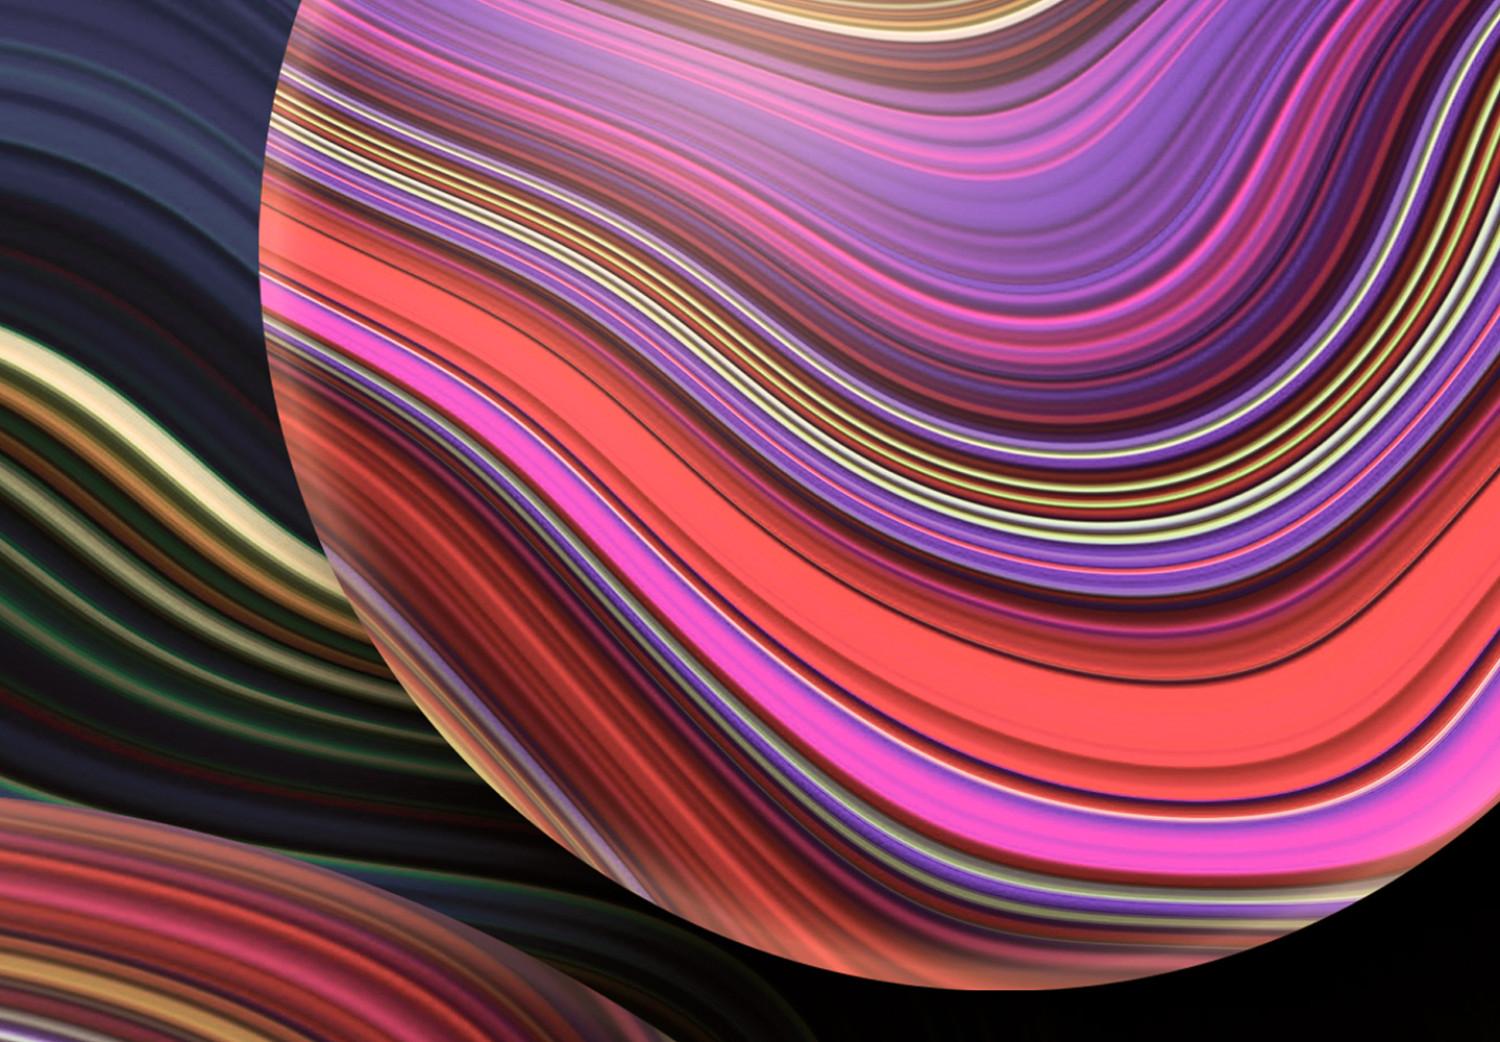 Poster Gotas de fantasía - composición abstracta de esferas de colores